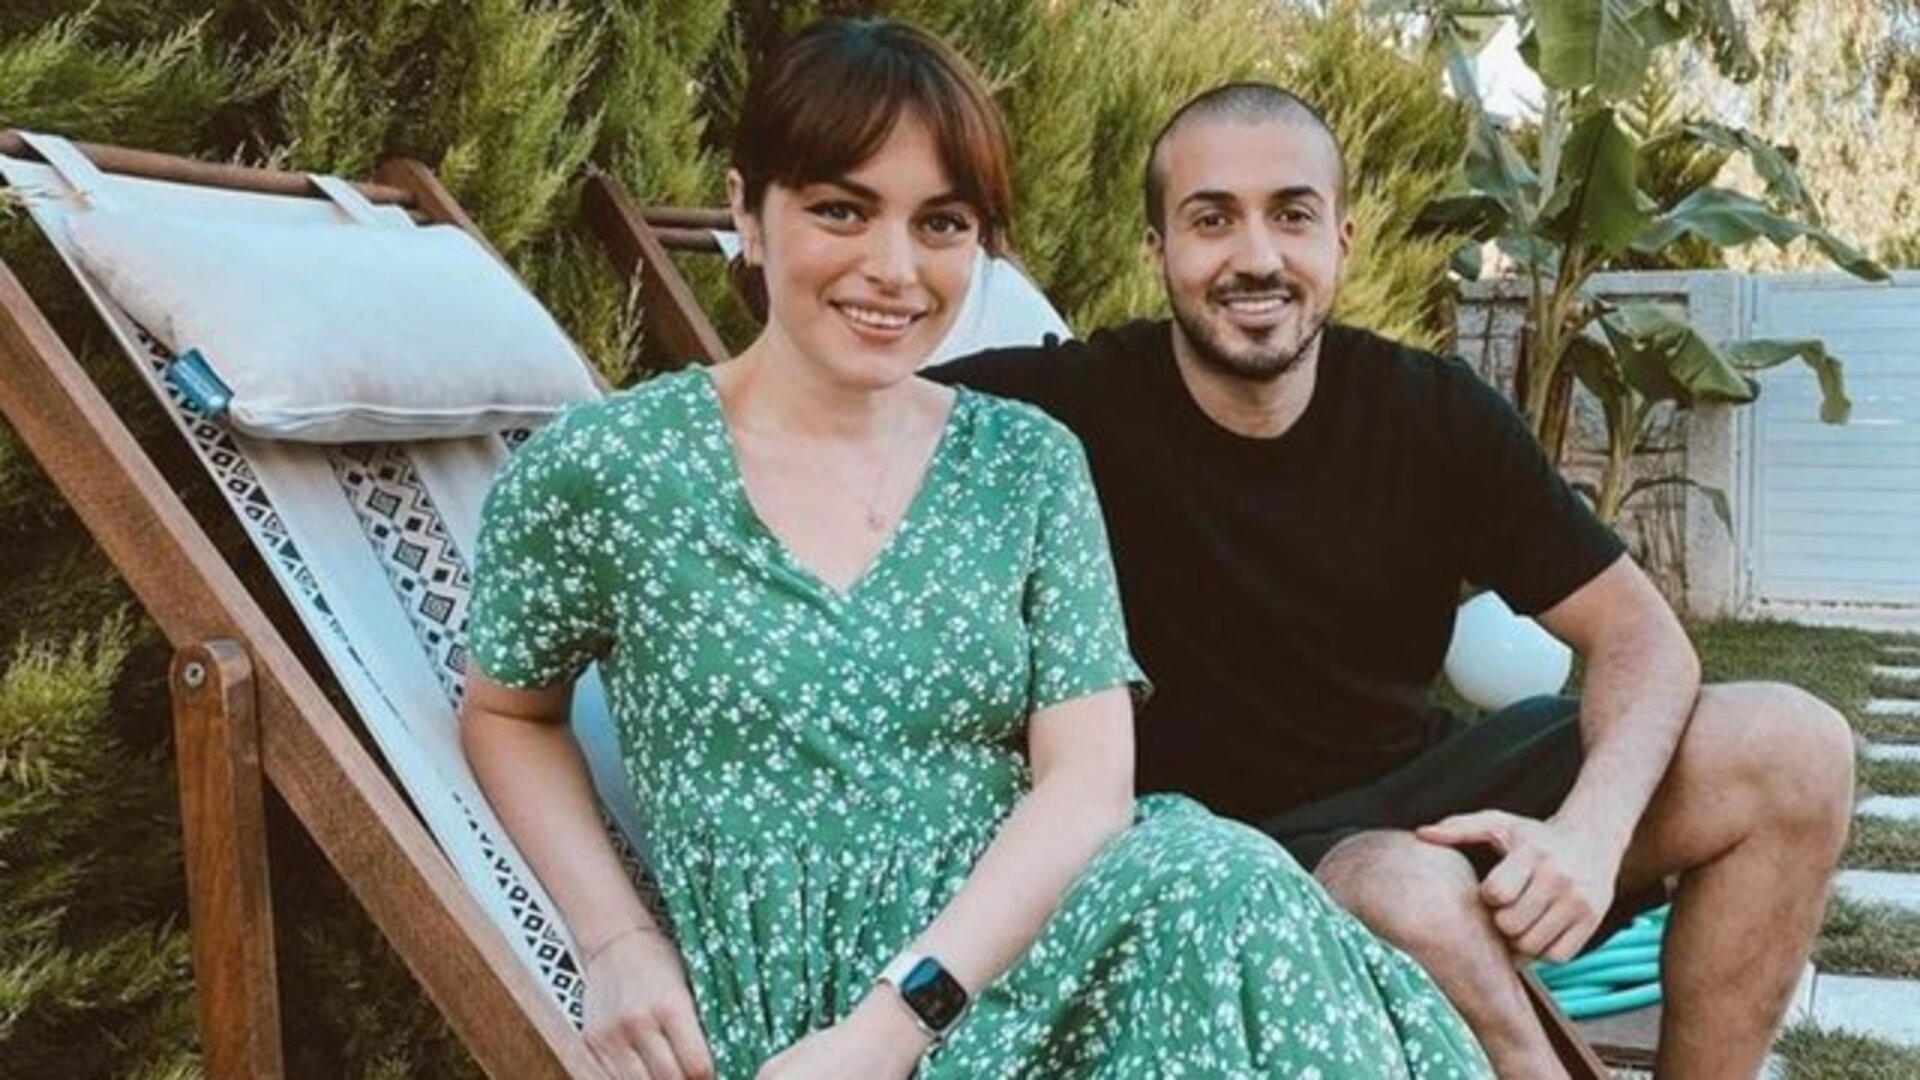 Ezgi Mola hamile mi? Ezgi Mola Mustafa Aksakallı evleniyor mu? - Magazin haberleri